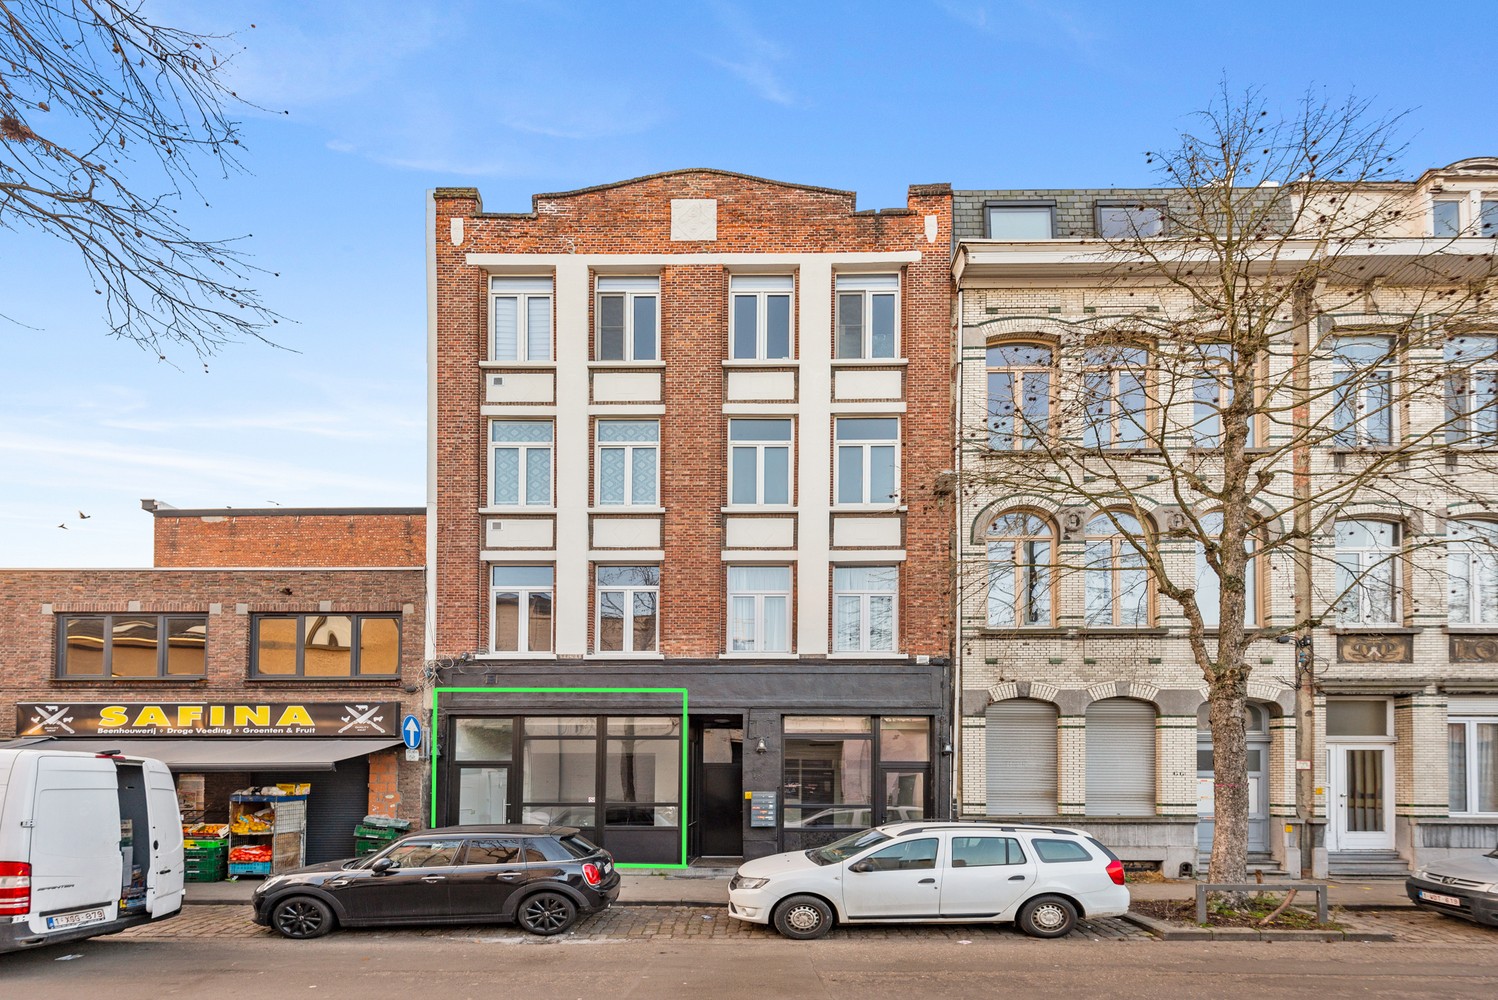 Commercieel gelijkvloers (117 m²) op de grens van 2018 Antwerpen en Borgerhout. afbeelding 1